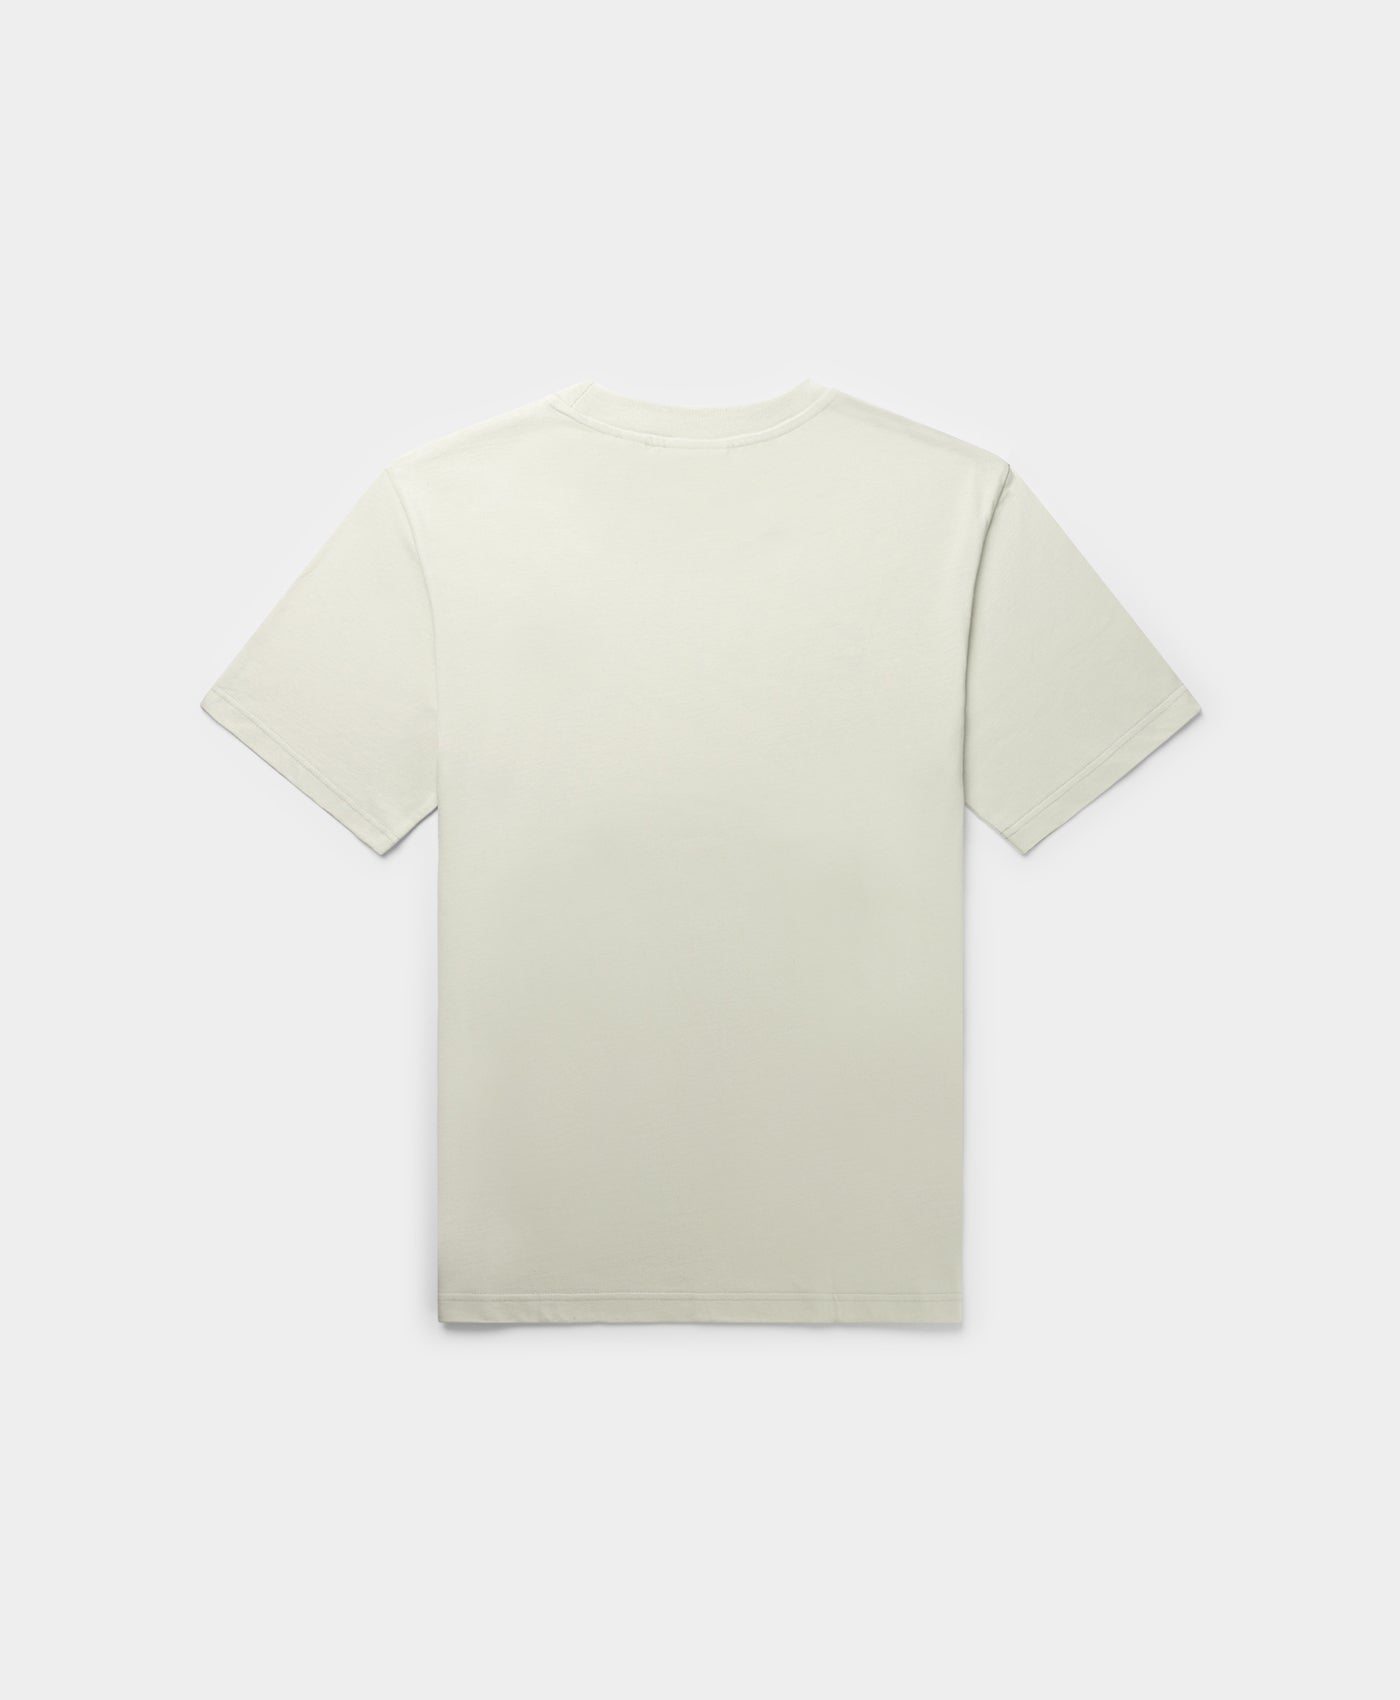 DP - Metal Grey Etype T-Shirt - Packshot - Rear